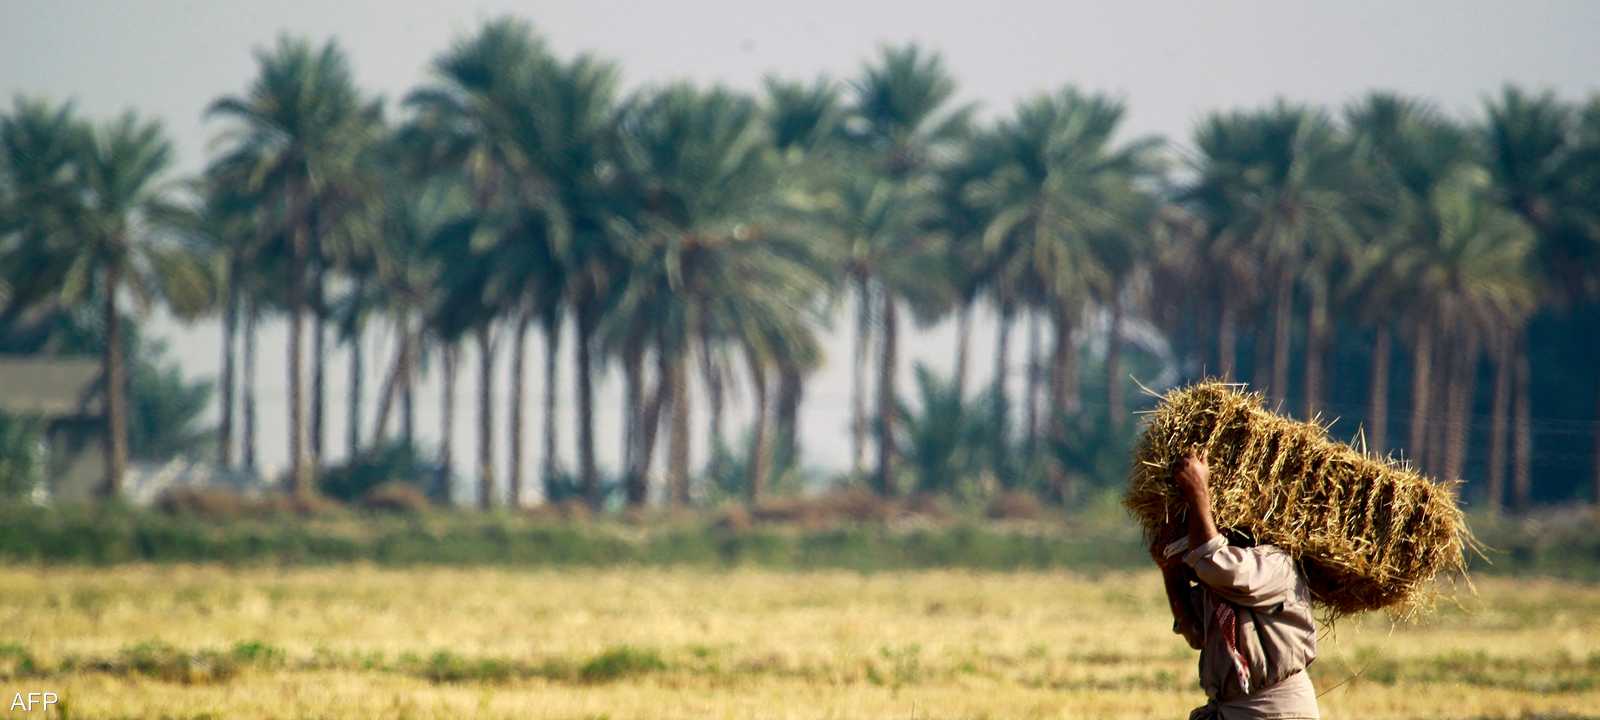 زراعة أرز العنبر في العراق